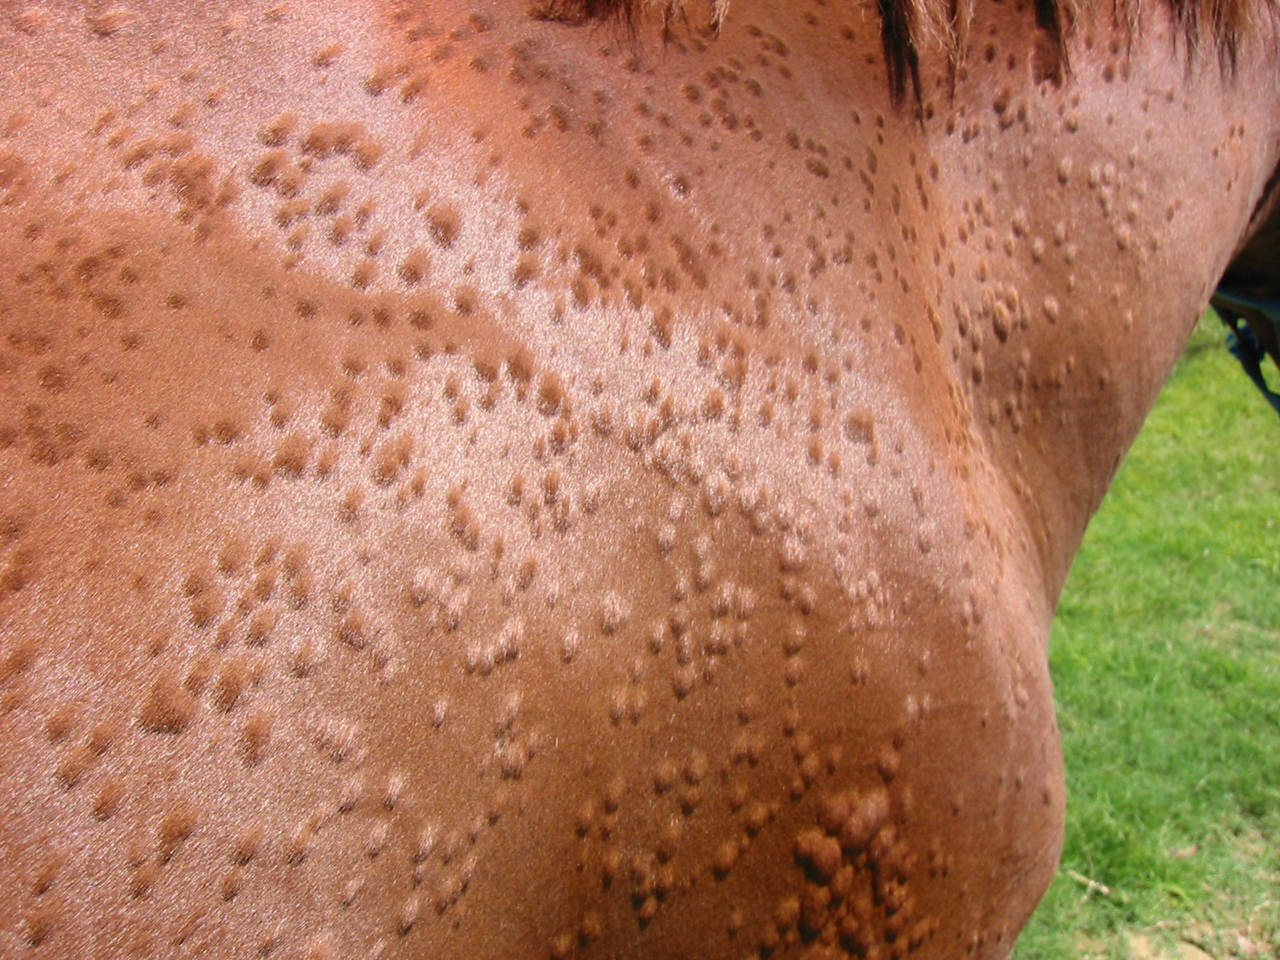 Hives (urticaria)